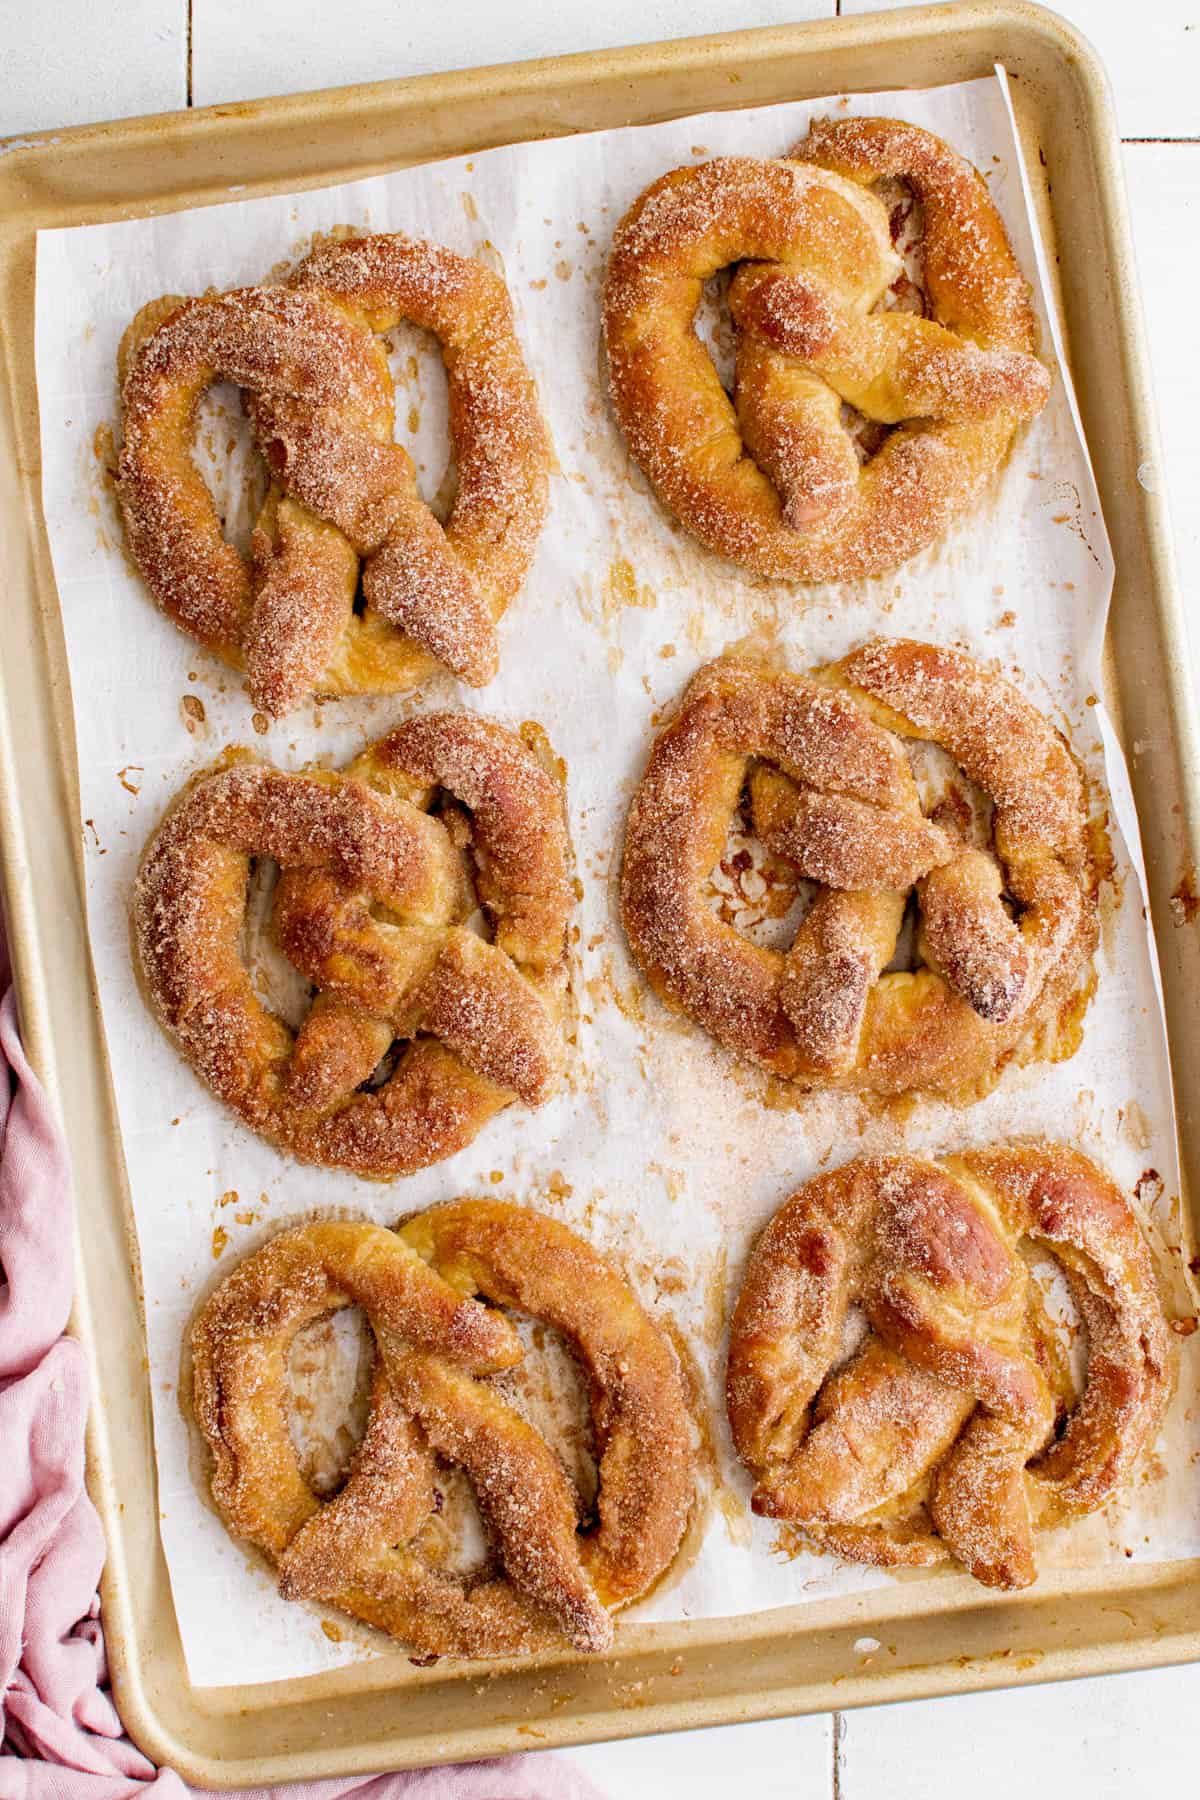 stuffed pretzels on a baking sheet after baking